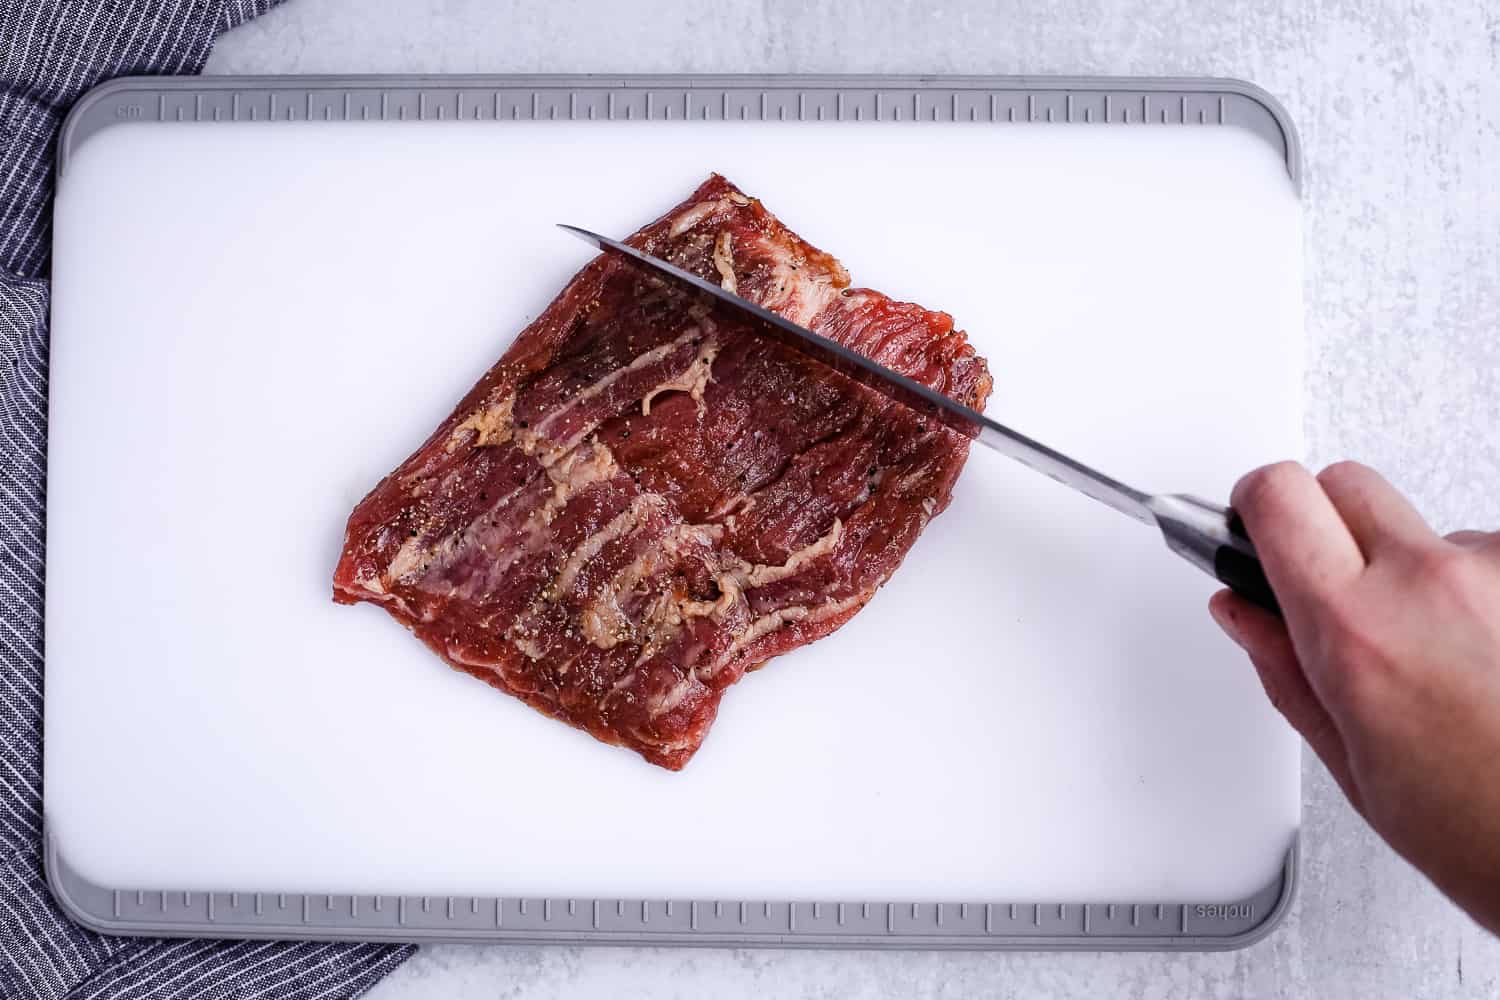 Cutting a skirt steak against the grain for a tender texture